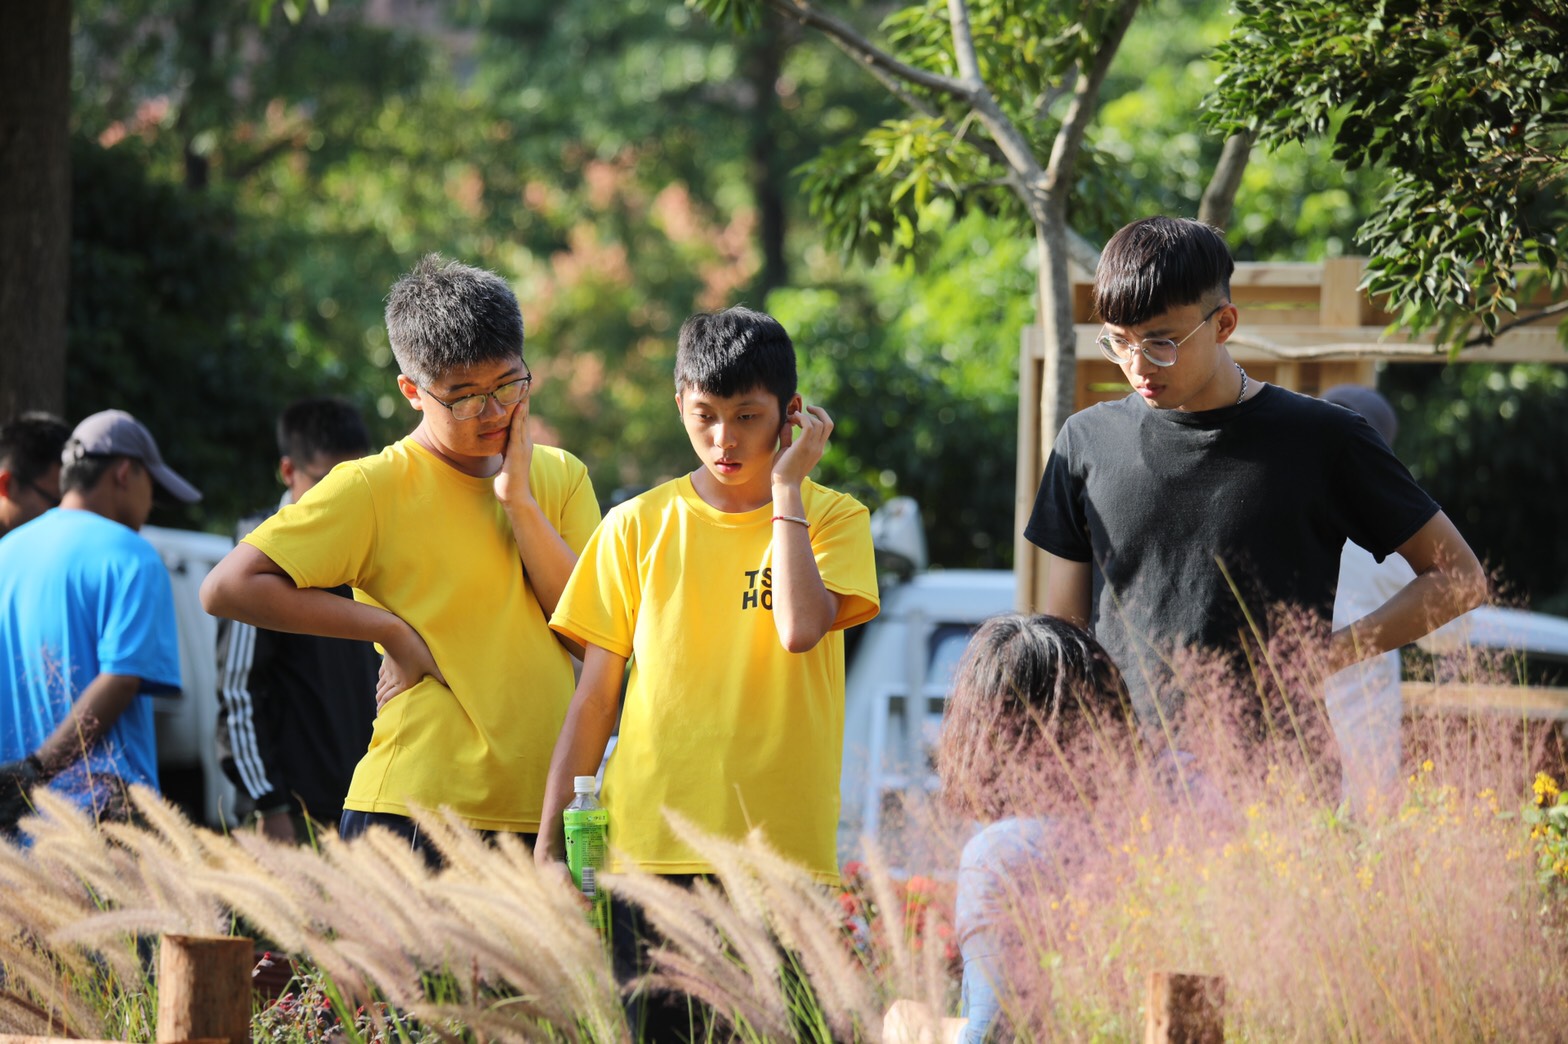 全國青年景觀競賽讓參賽者得以在都會公園中實現自己設計作品的夢想